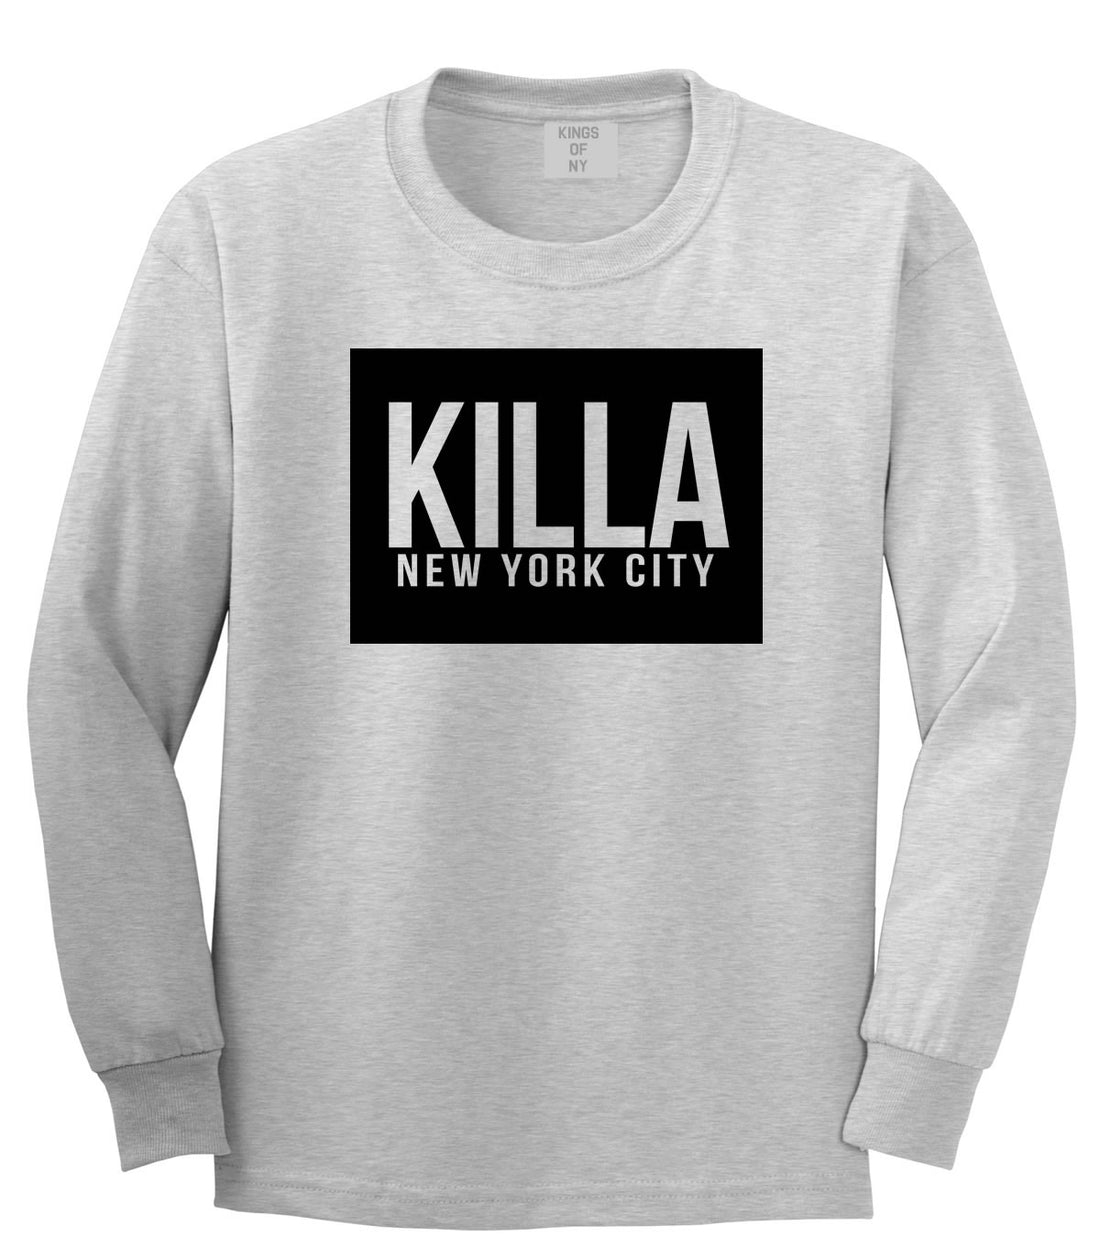 Killa New York City Harlem Long Sleeve T-Shirt in Grey by Kings Of NY